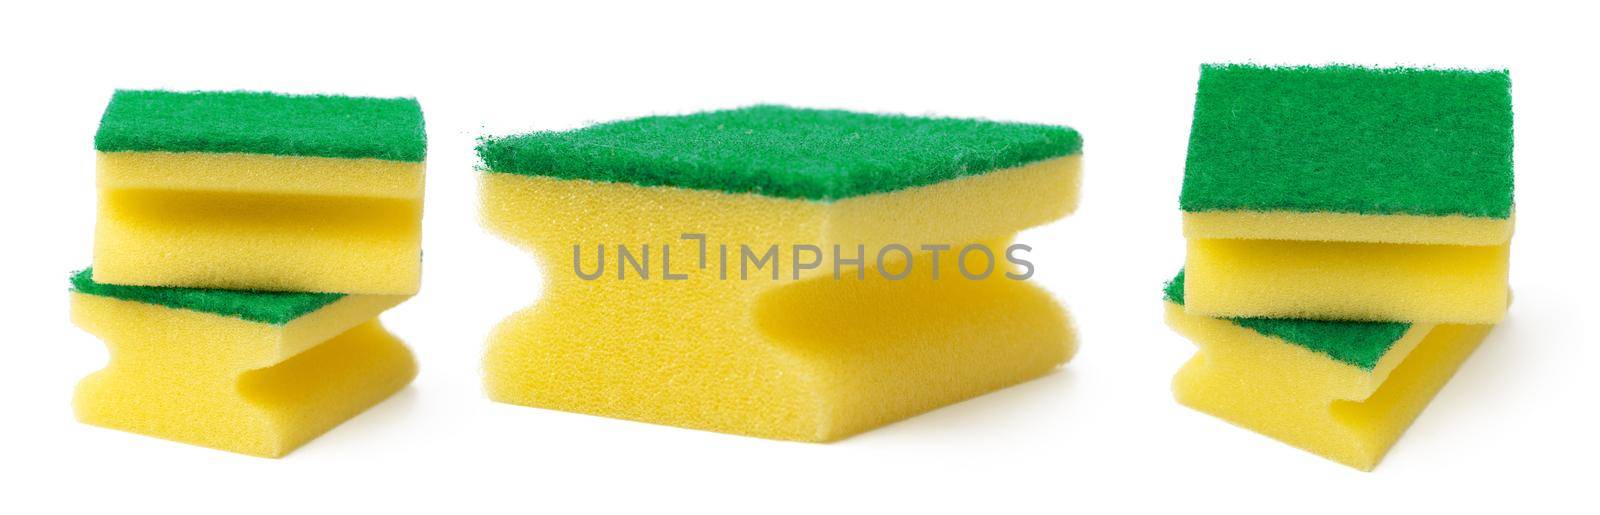 Kitchen sponge for dish washing isolated on white background. by Fabrikasimf